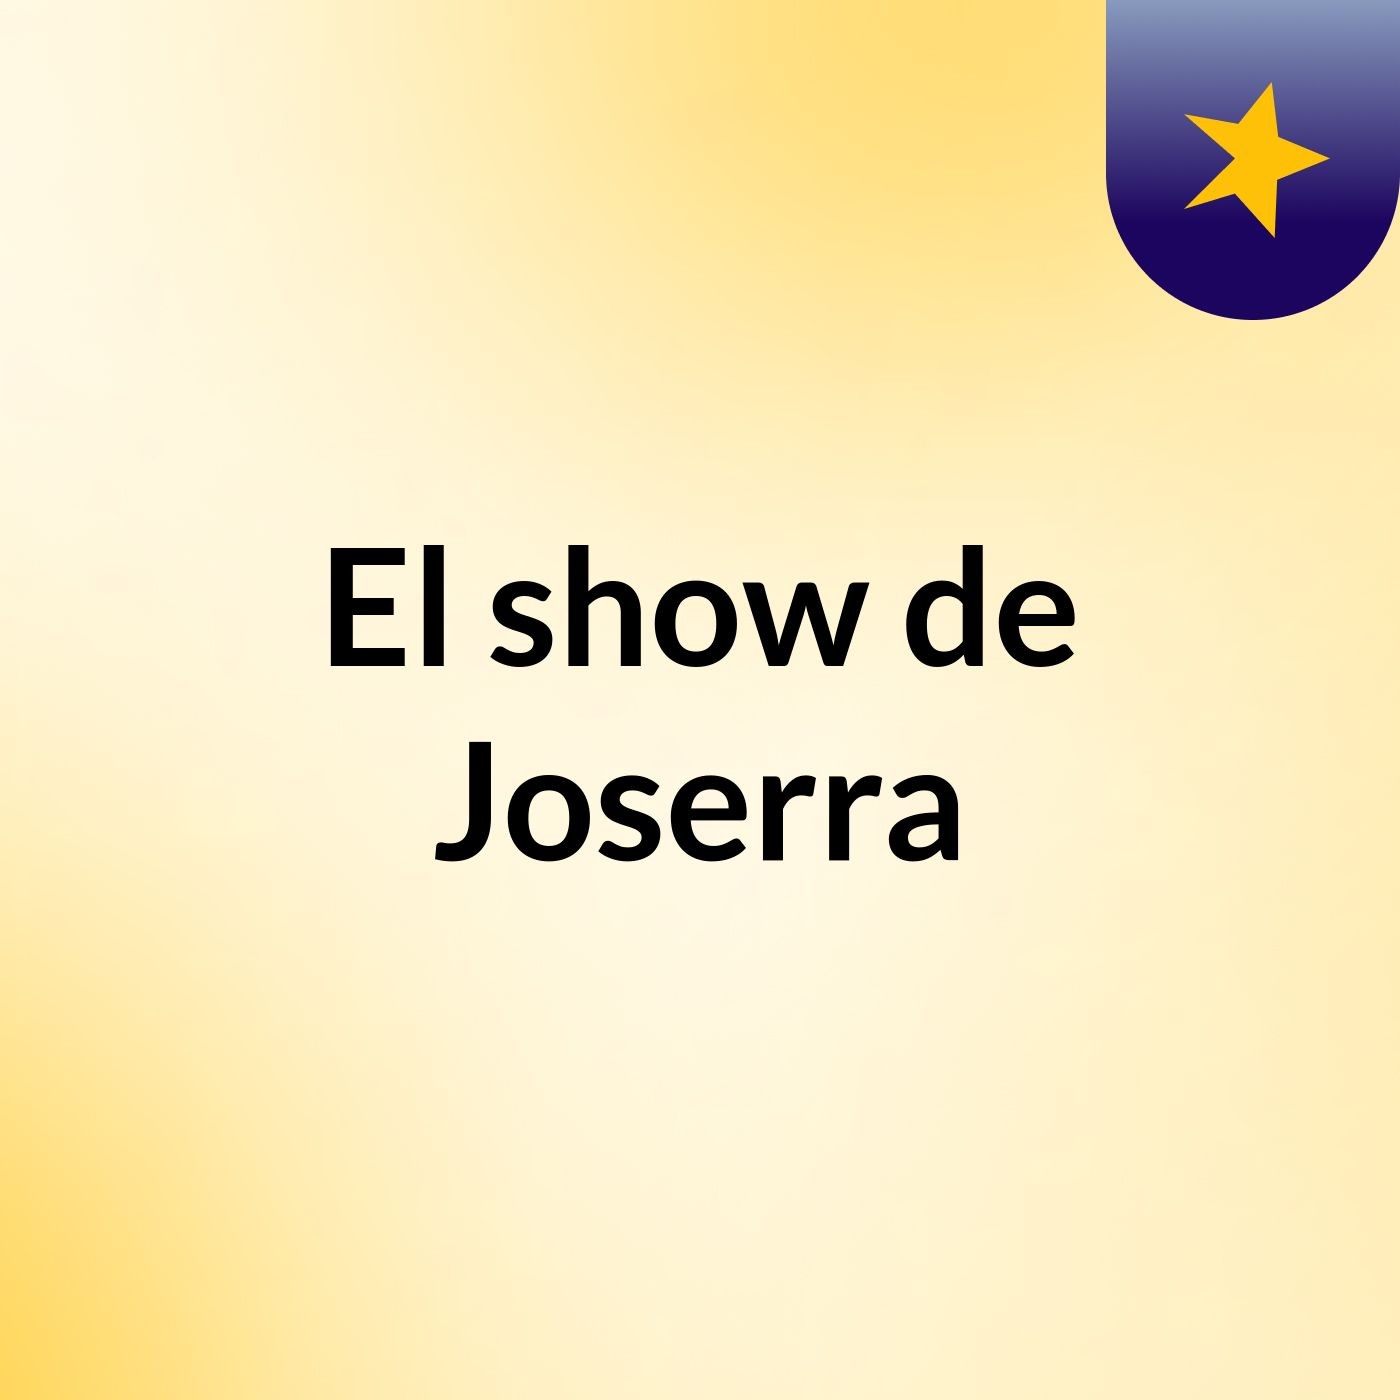 El show de Joserra